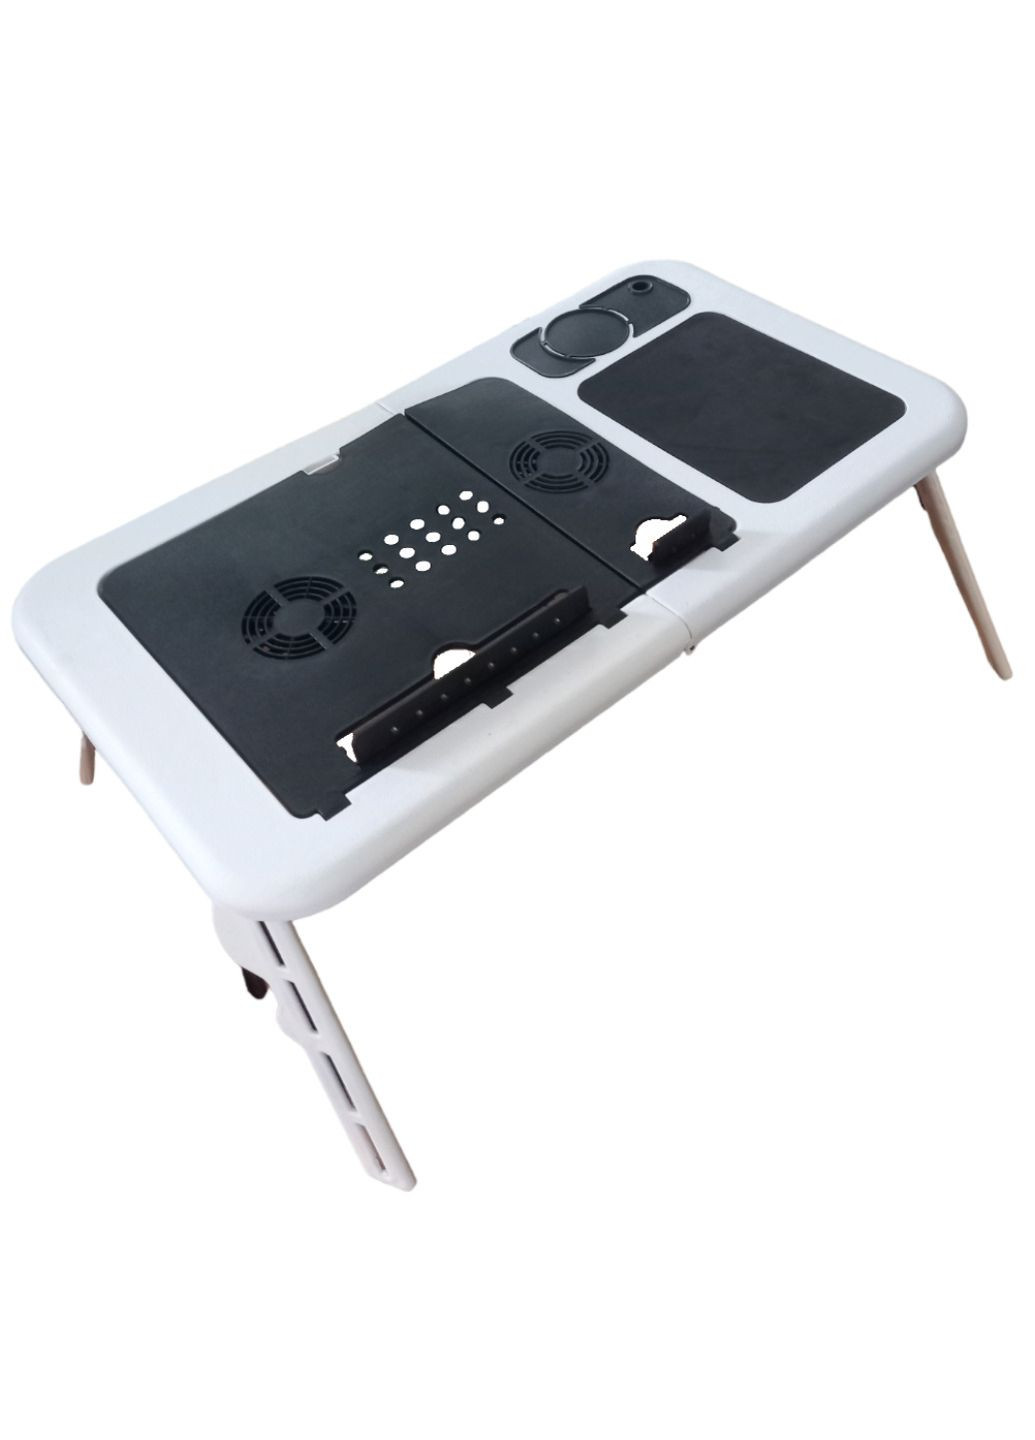 Столик для ноутбука подставка складной многофункциональный с кулером E Table LD 09 No Brand (260715584)